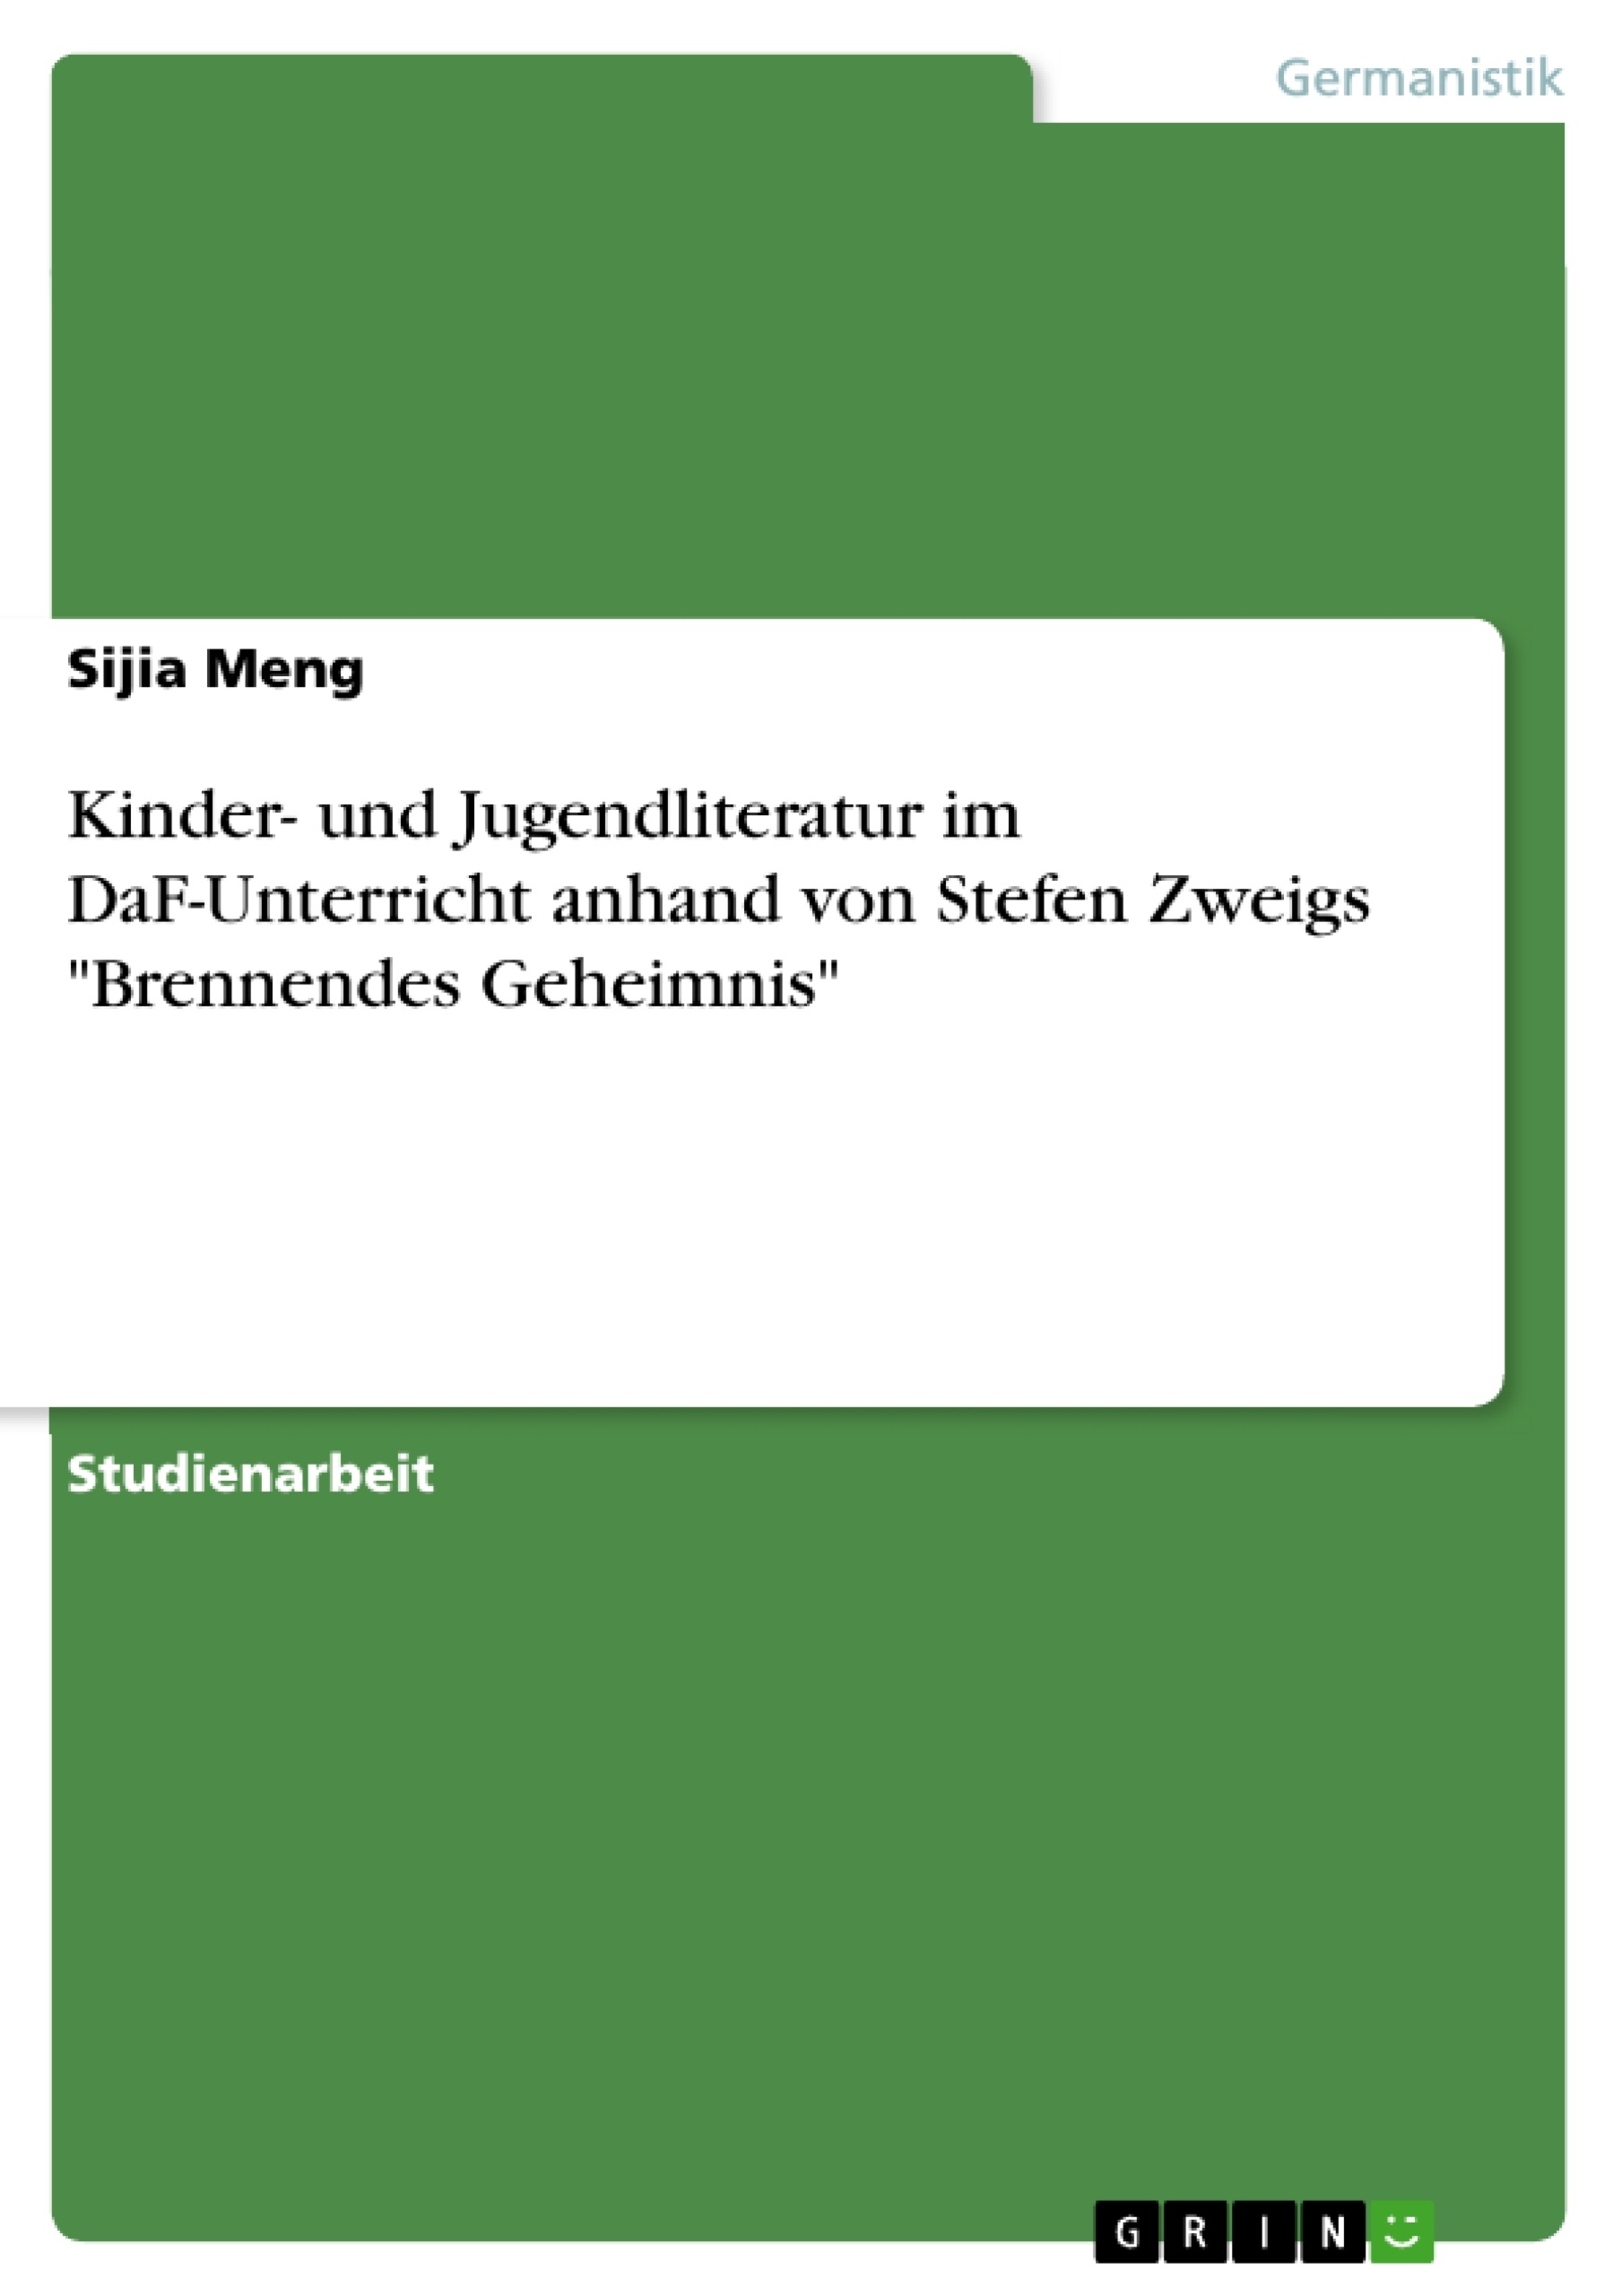 Título: Kinder- und Jugendliteratur im DaF-Unterricht anhand von Stefen Zweigs "Brennendes Geheimnis"